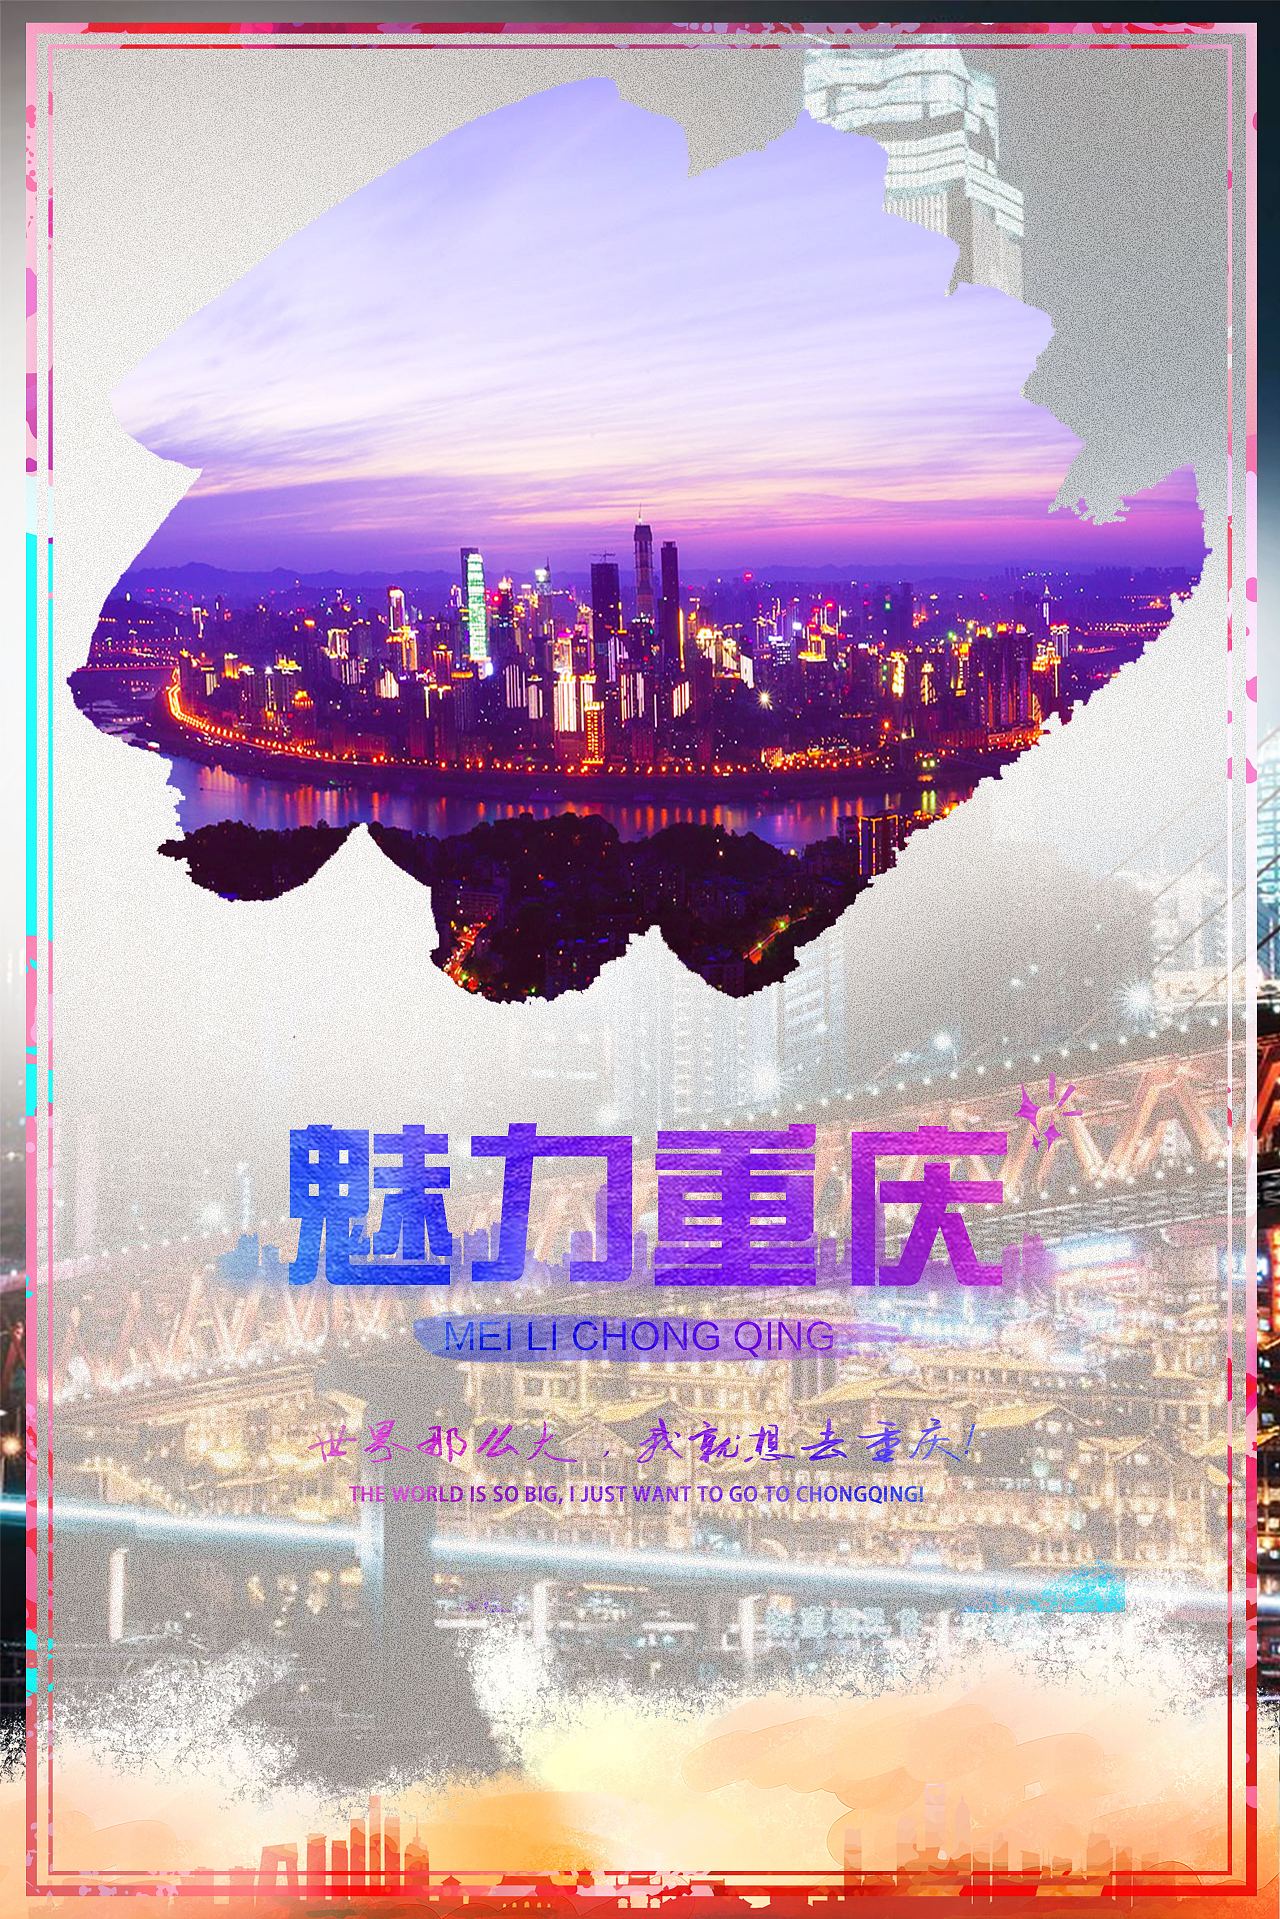 重庆旅游海报